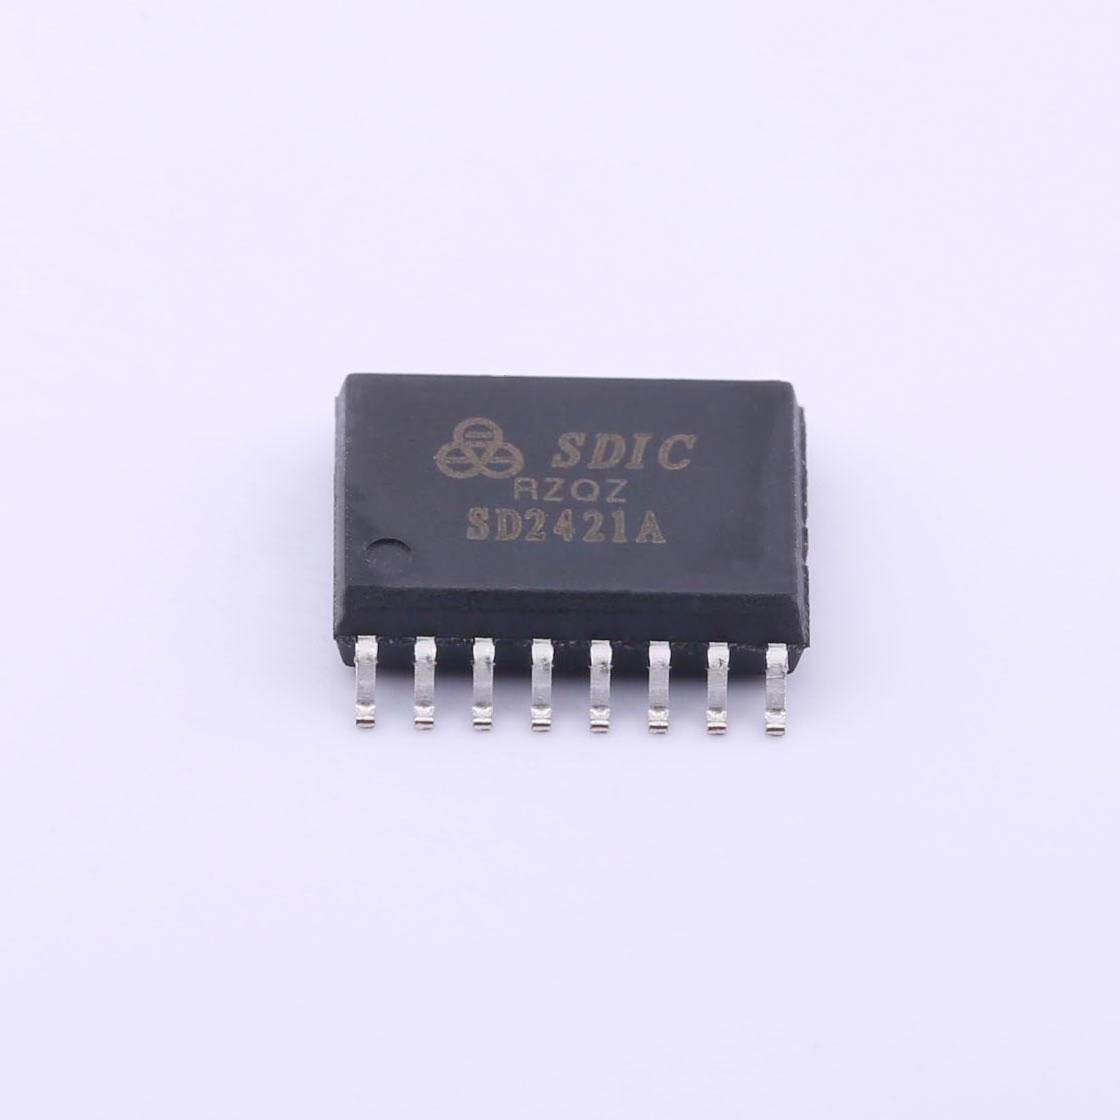 SDIC(晶华微) SD2421A